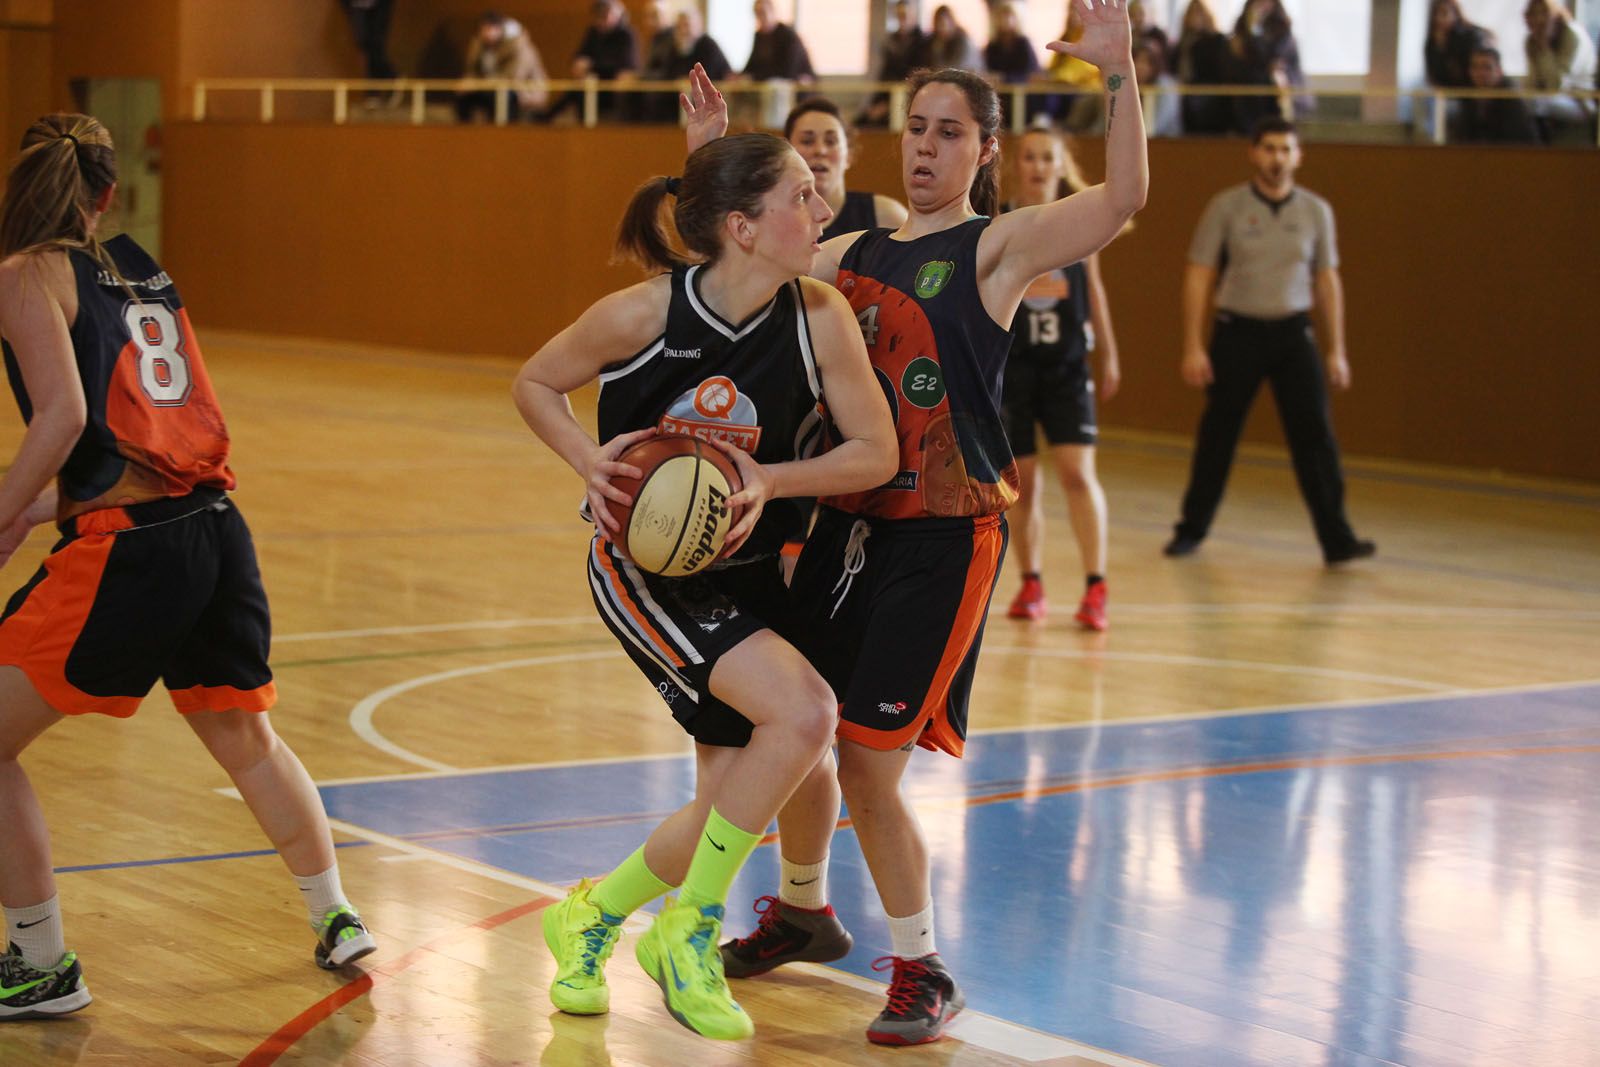 Bàsquet femení: Qbasket Sant Cugat vs BasquetPiaSabadell a la ZEM Rambla del Celler. FOTOS: Lali Puig